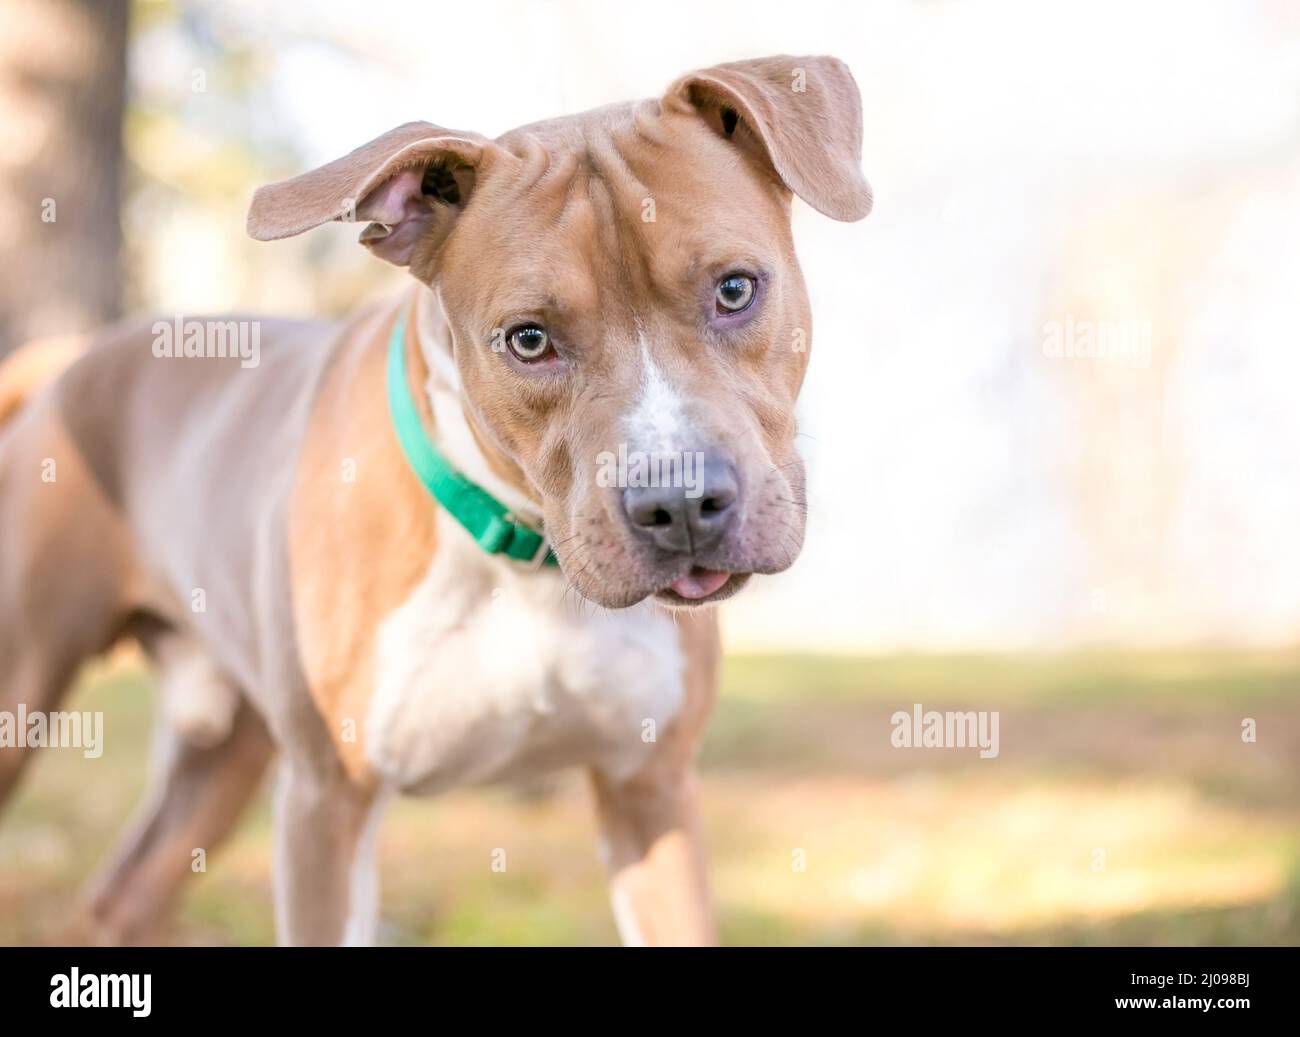 Un color blanco y fawn Pit Bull Terrier mixto perro de raza escuchando con una inclinación de la cabeza y sacando su lengua hacia fuera Foto de stock